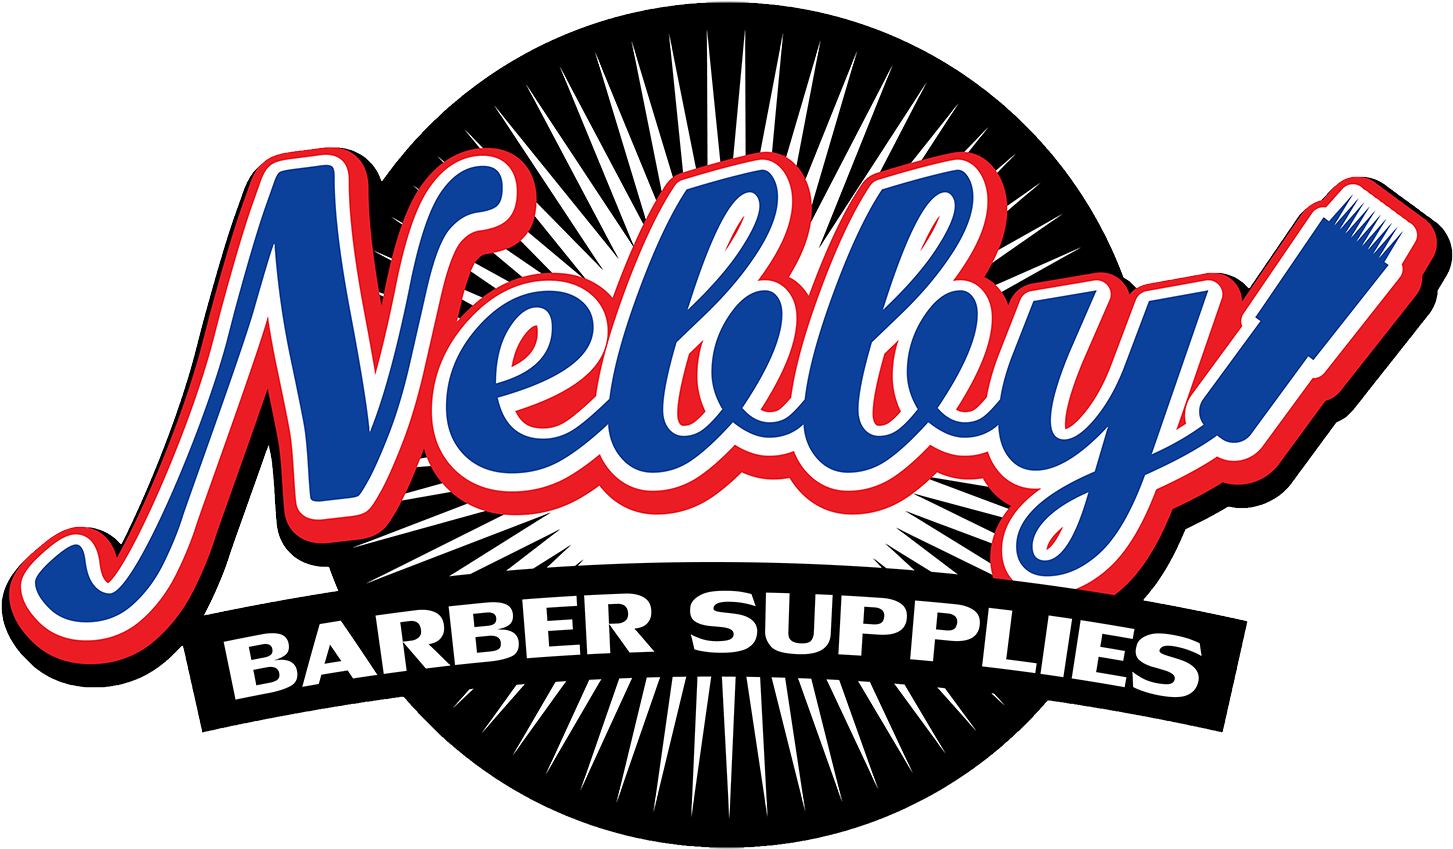 Nebby Barber Supplies - Nebby Barber Supplies (1500x938)